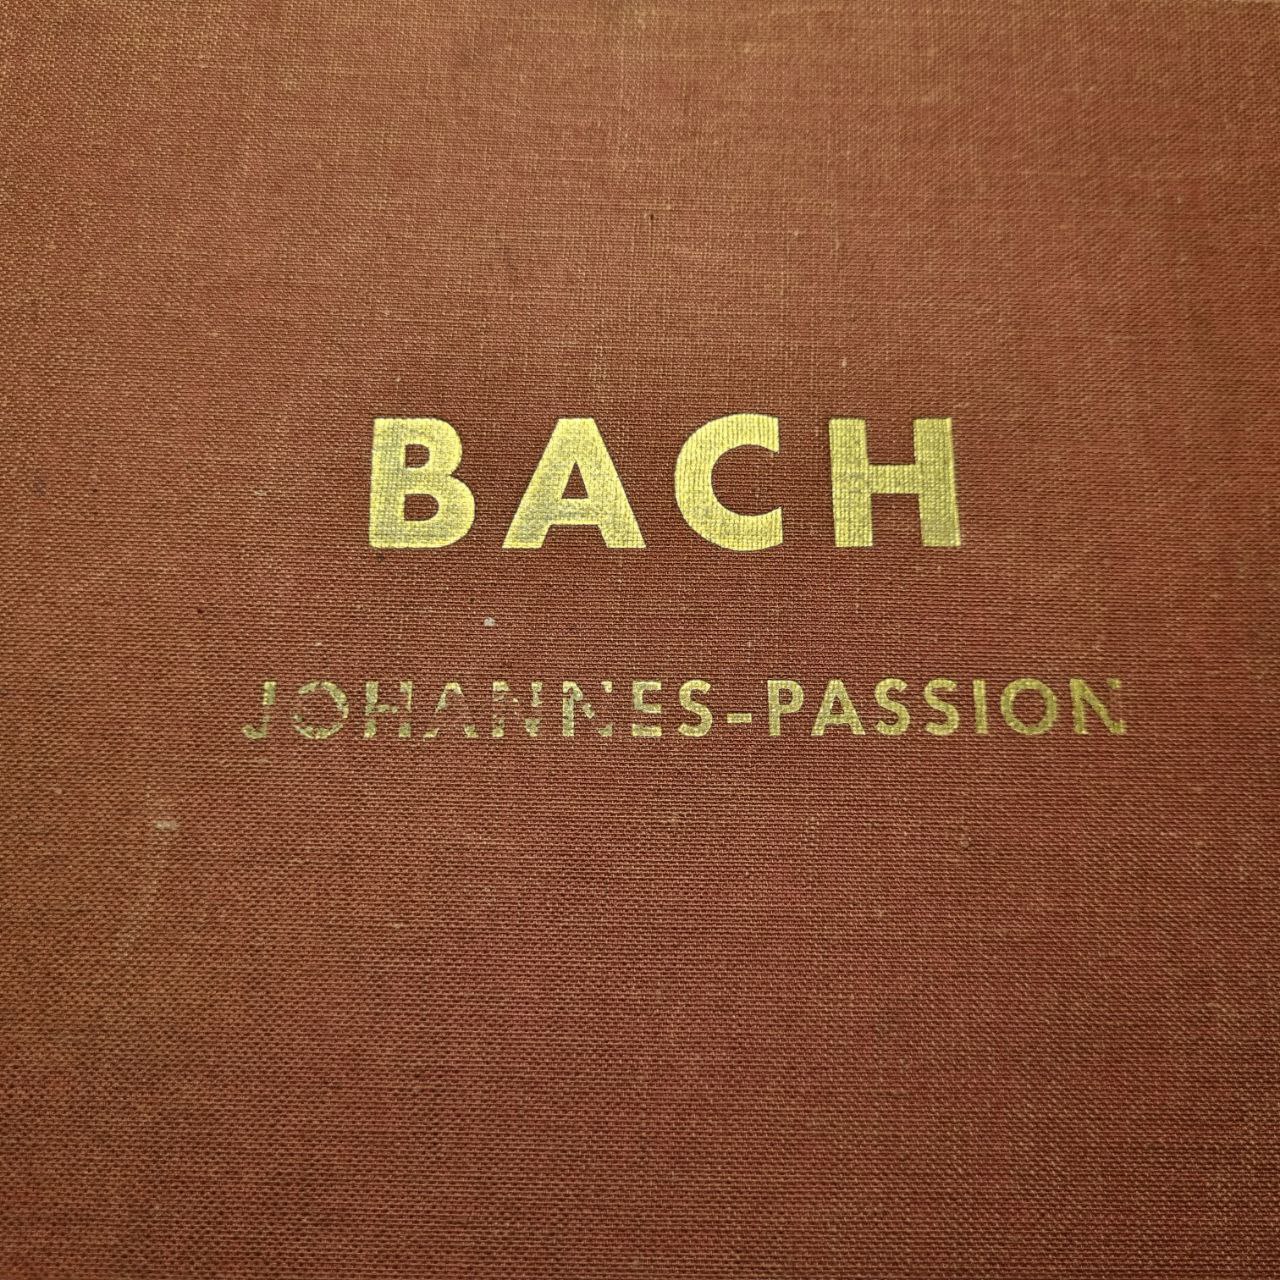 Bach: Johannes-Passion